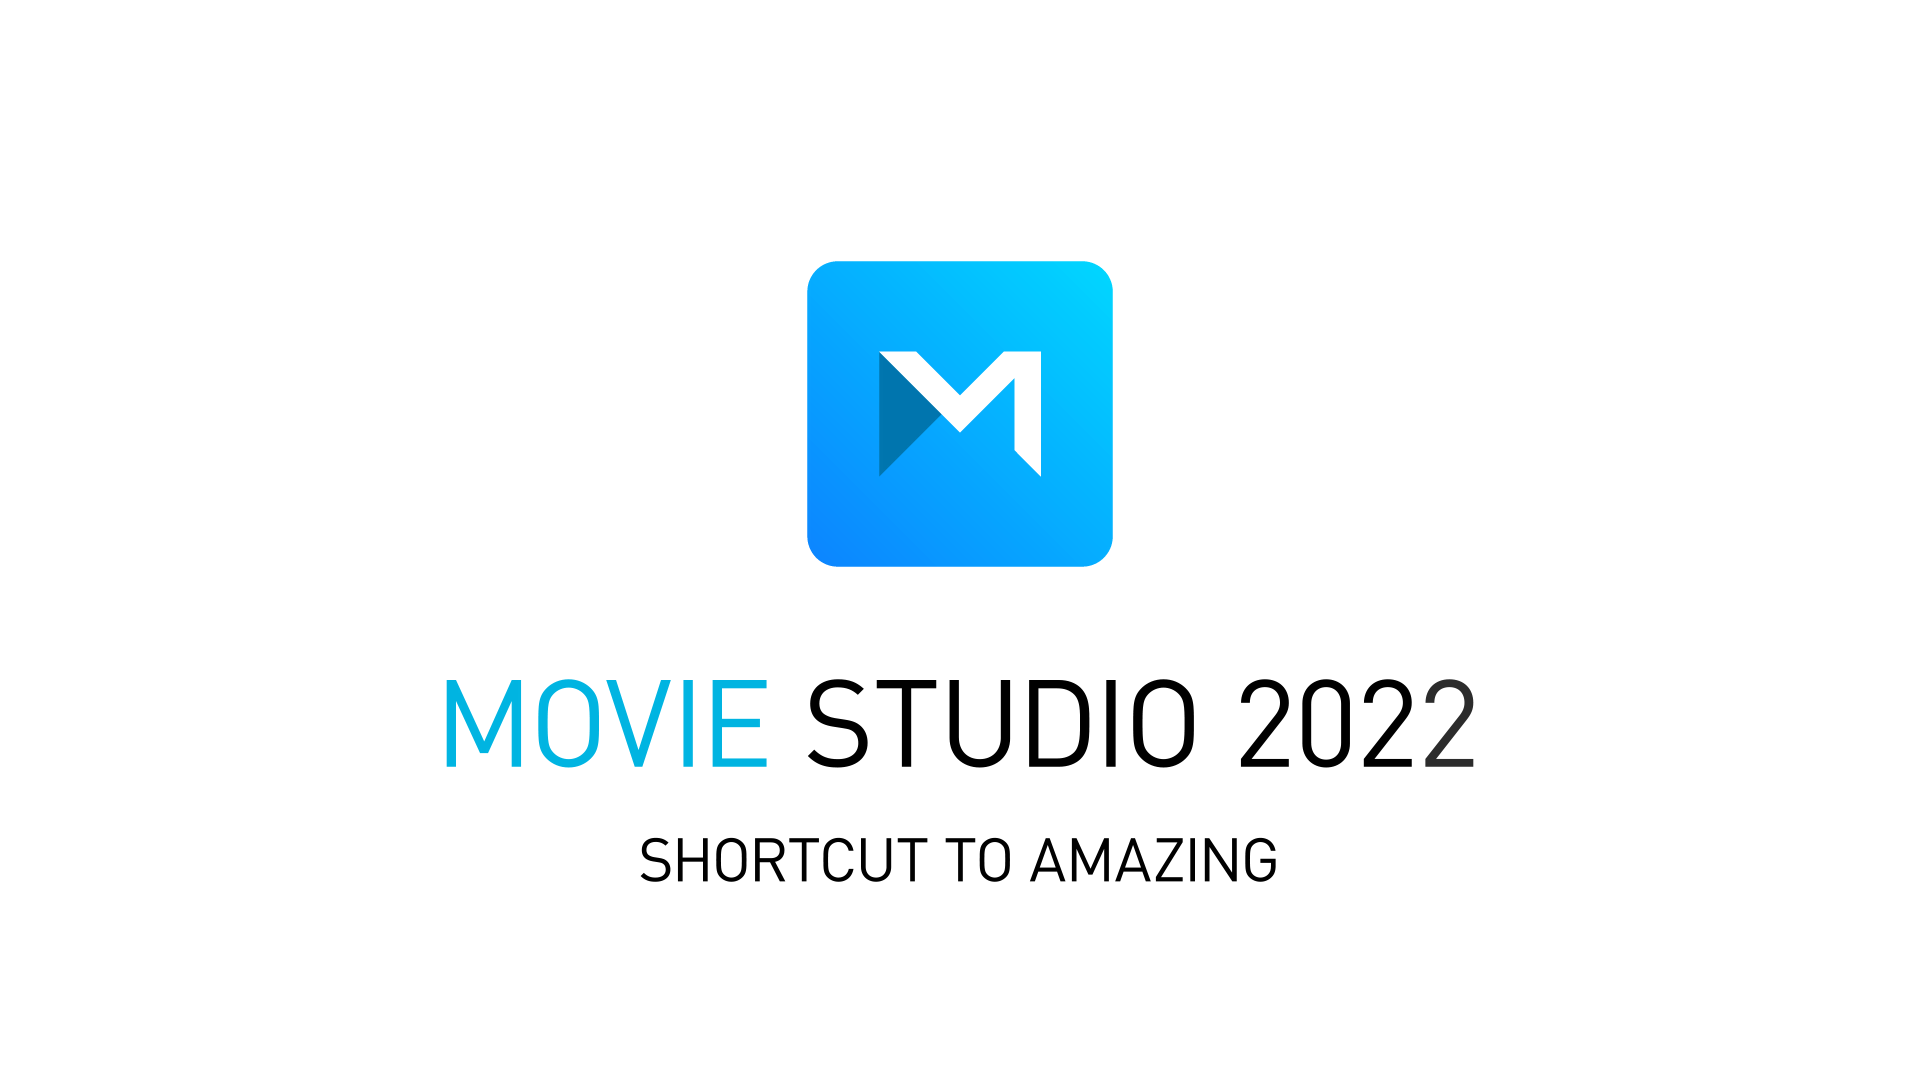 Abbiamo importanti novità per il tuo Movie Studio